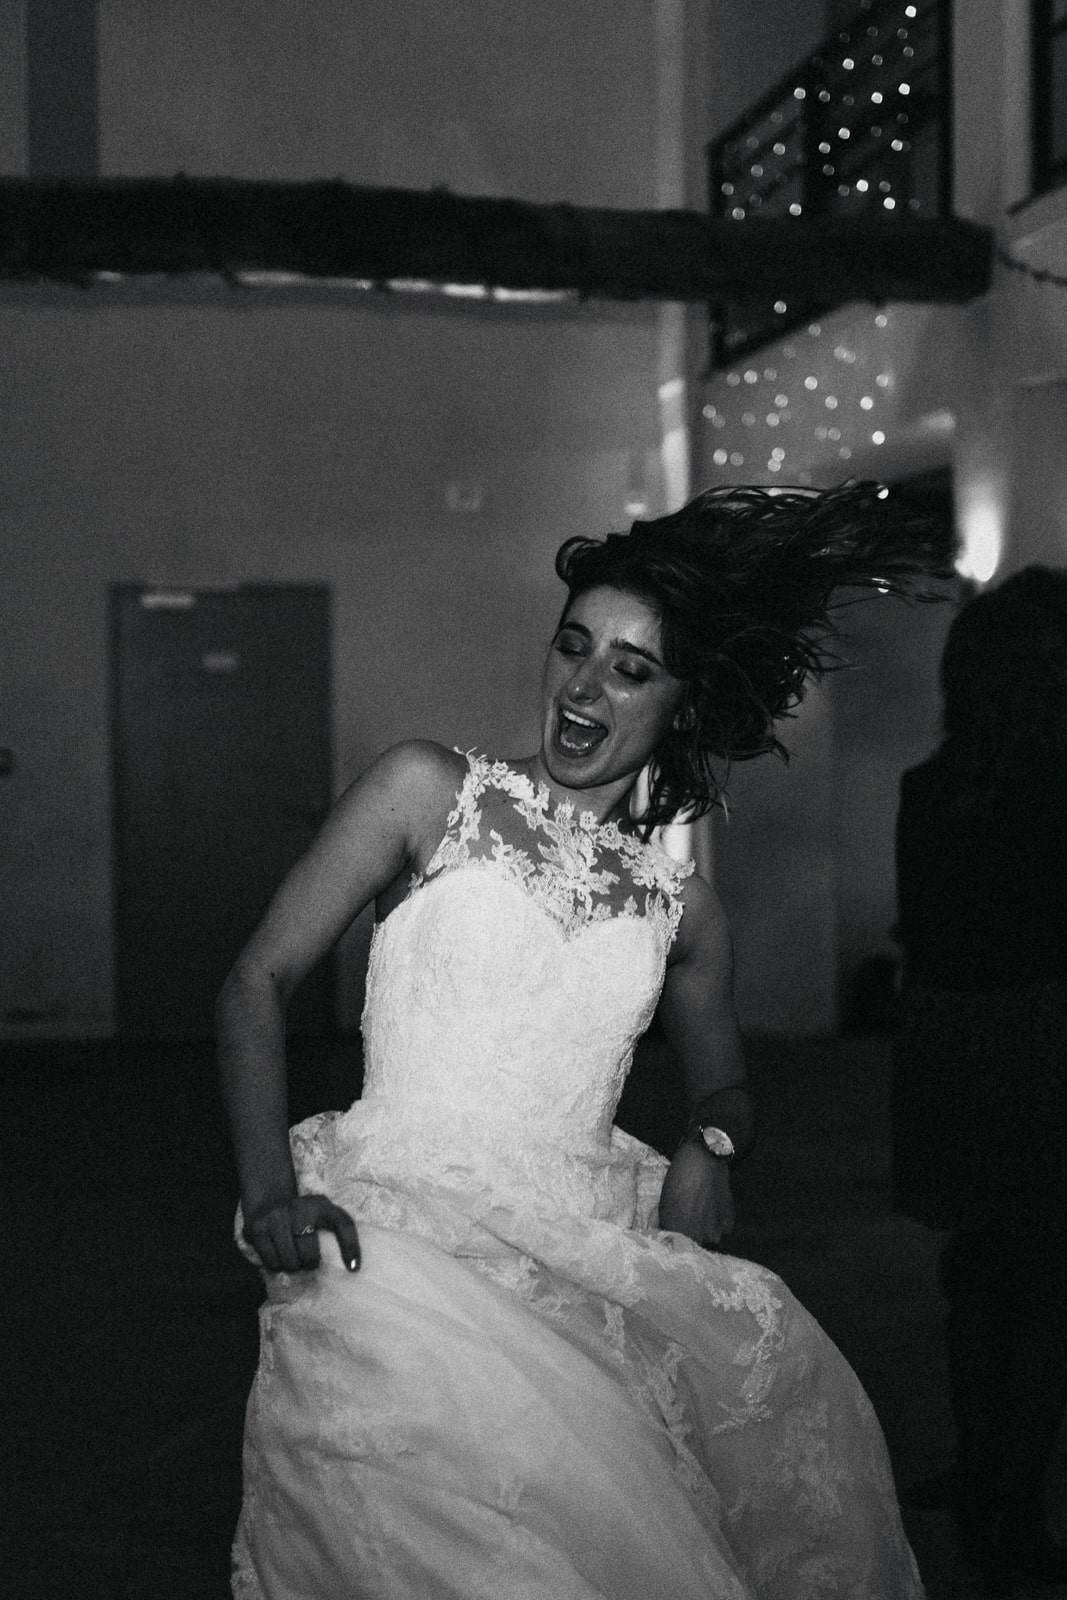 La mariée qui danse après le repas de son mariage au Pays basque